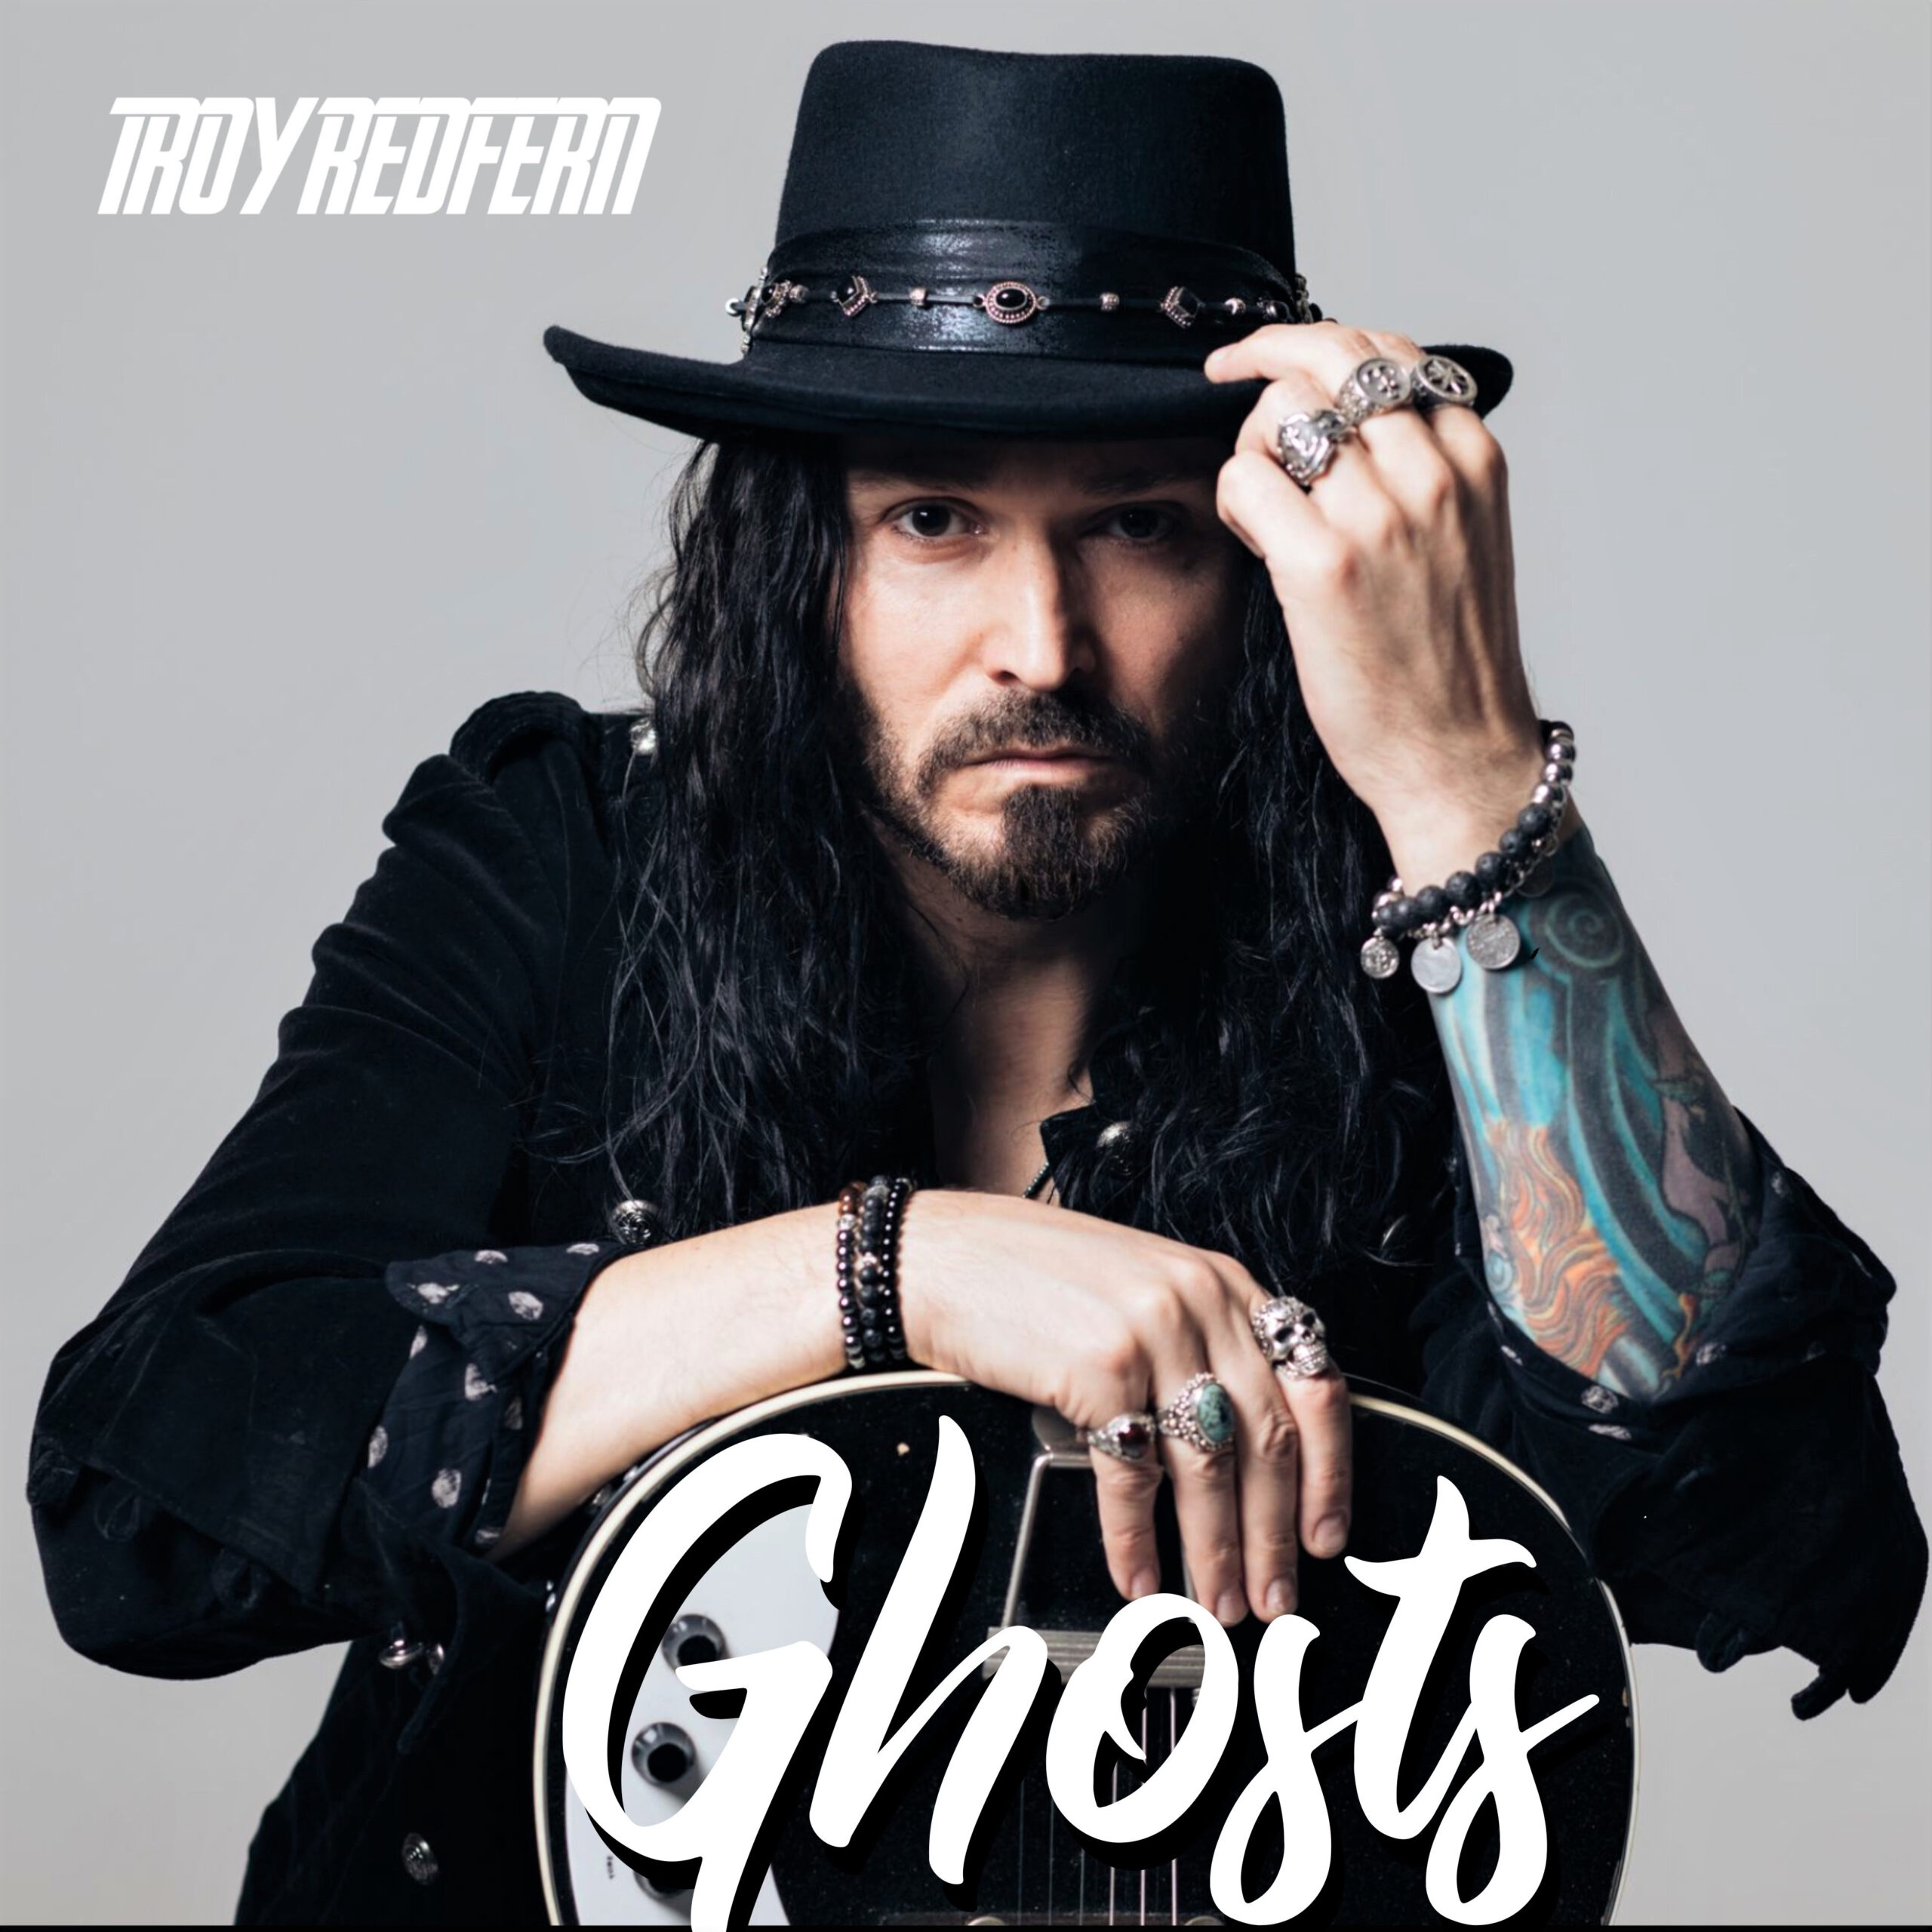 Troy Redfern - Ghosts